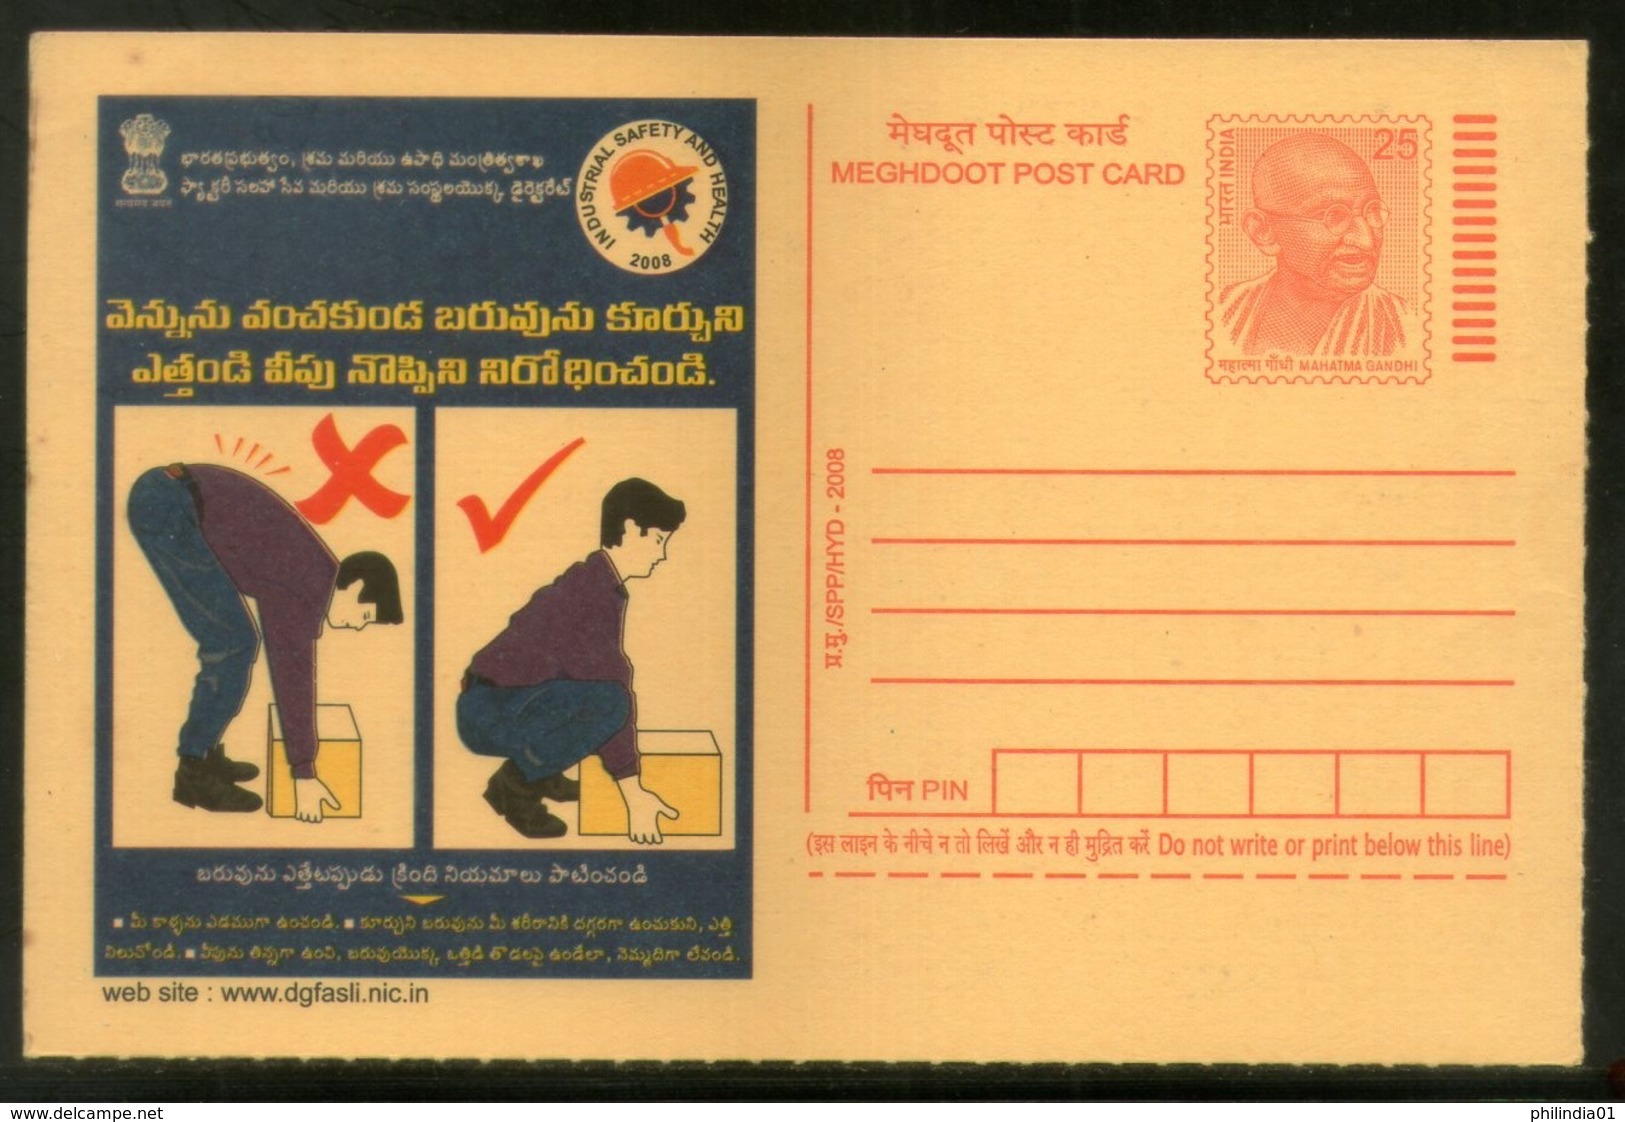 India 2008 Prevent Backaches Industrial Safety & Health Telugu Advert.Gandhi Post Card # 508 - Ongevallen & Veiligheid Op De Weg